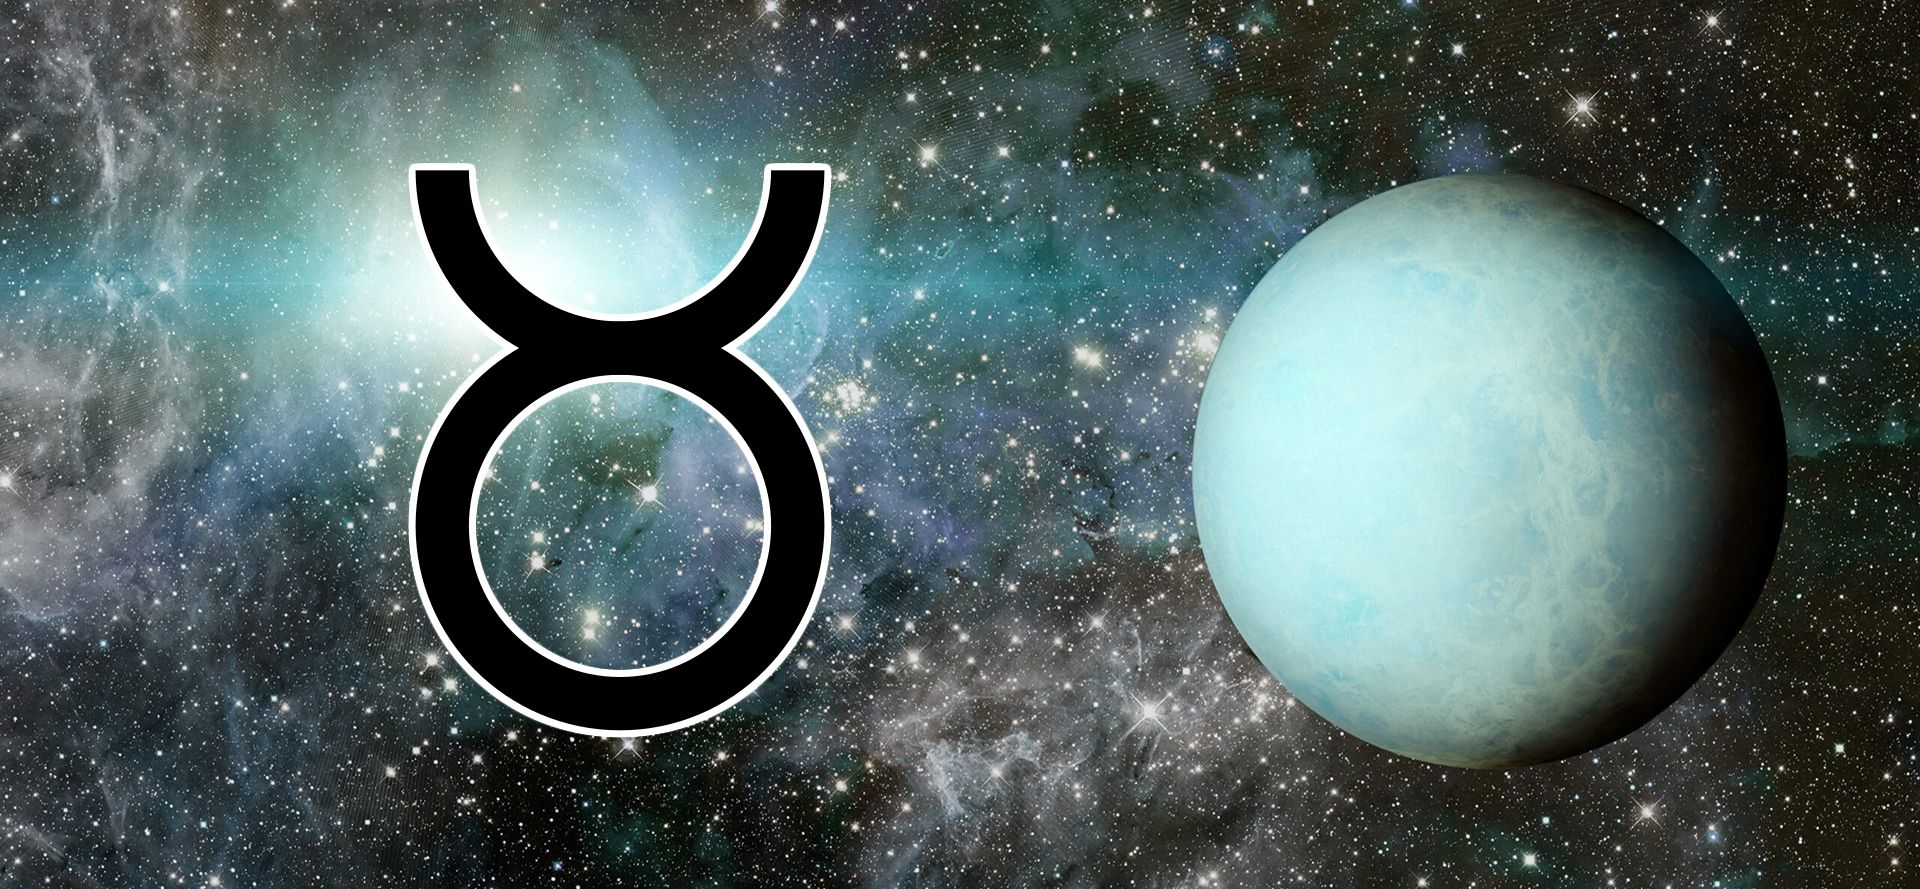 Uranus and Taurus sign.